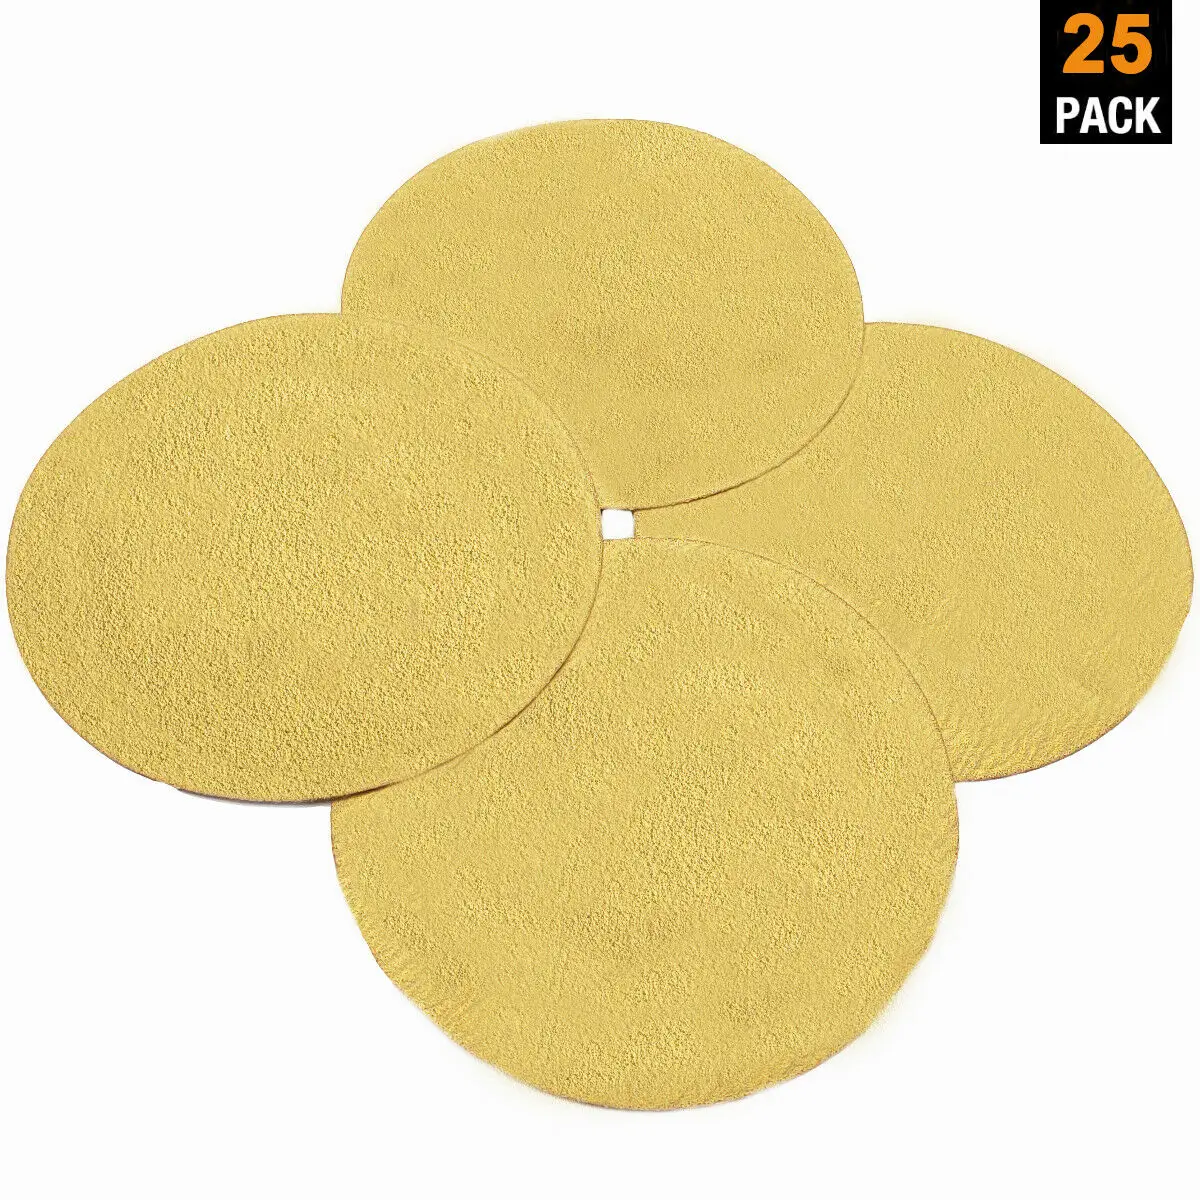 25PCS 6 Inch Gold Sanding Discs Hook and Loop No Hole 40 Grit Sander Sandpaper